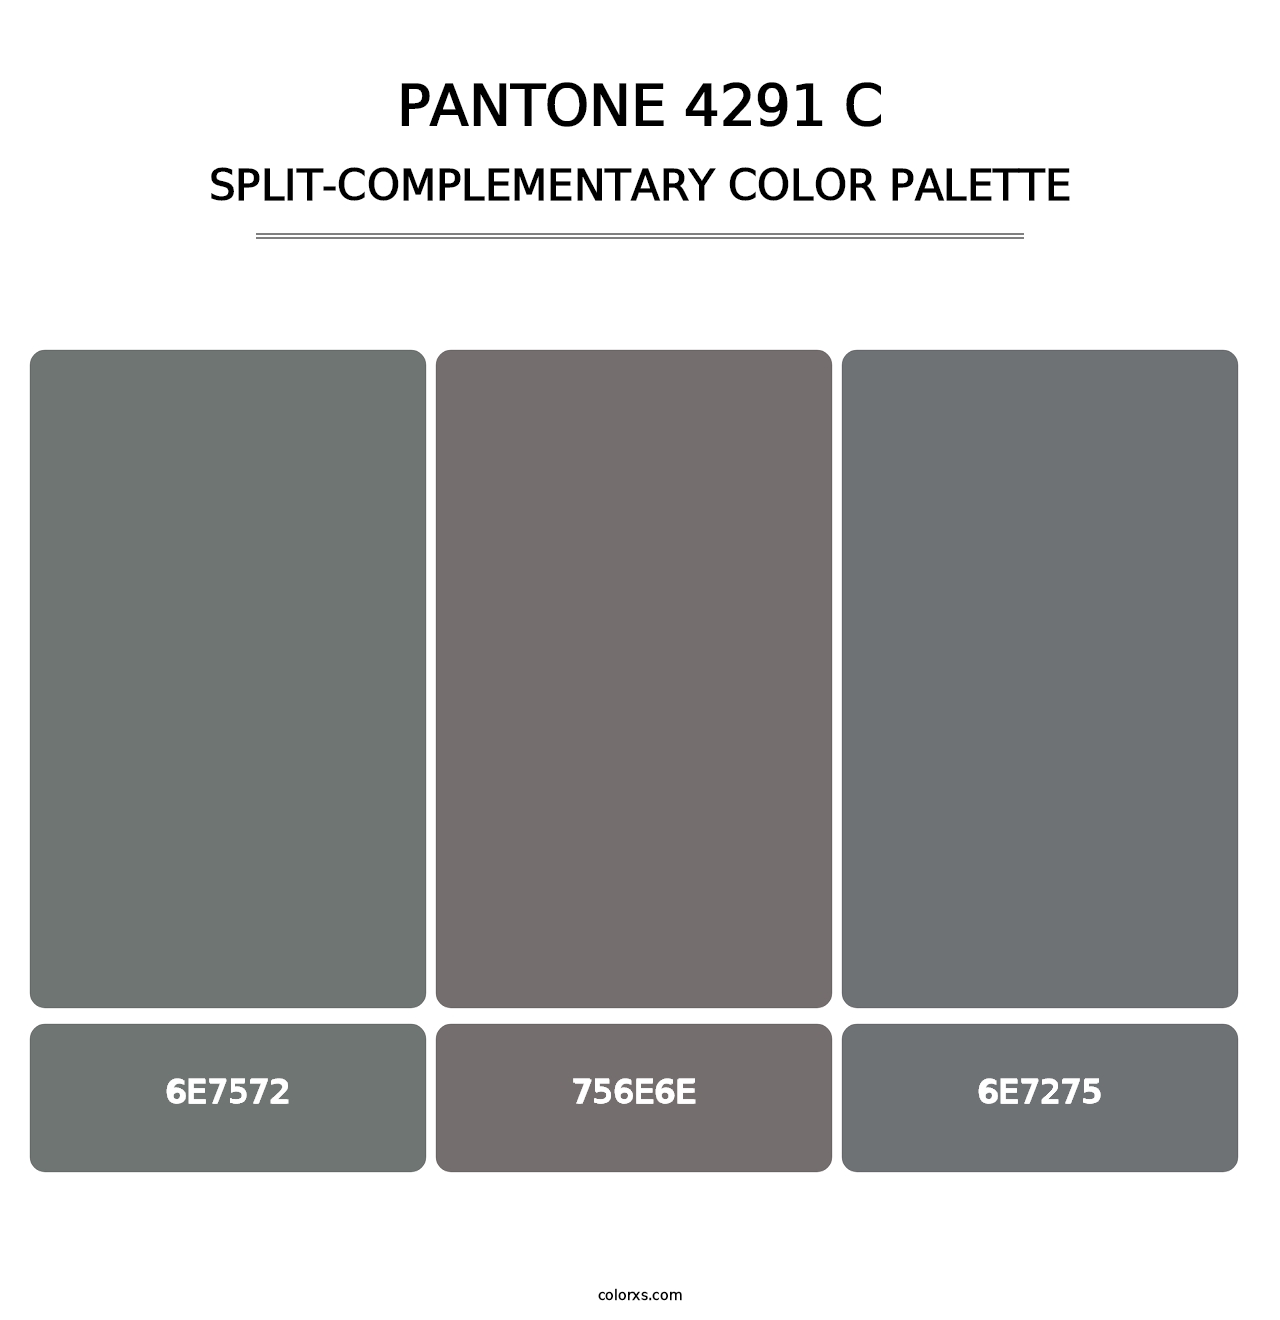 PANTONE 4291 C - Split-Complementary Color Palette